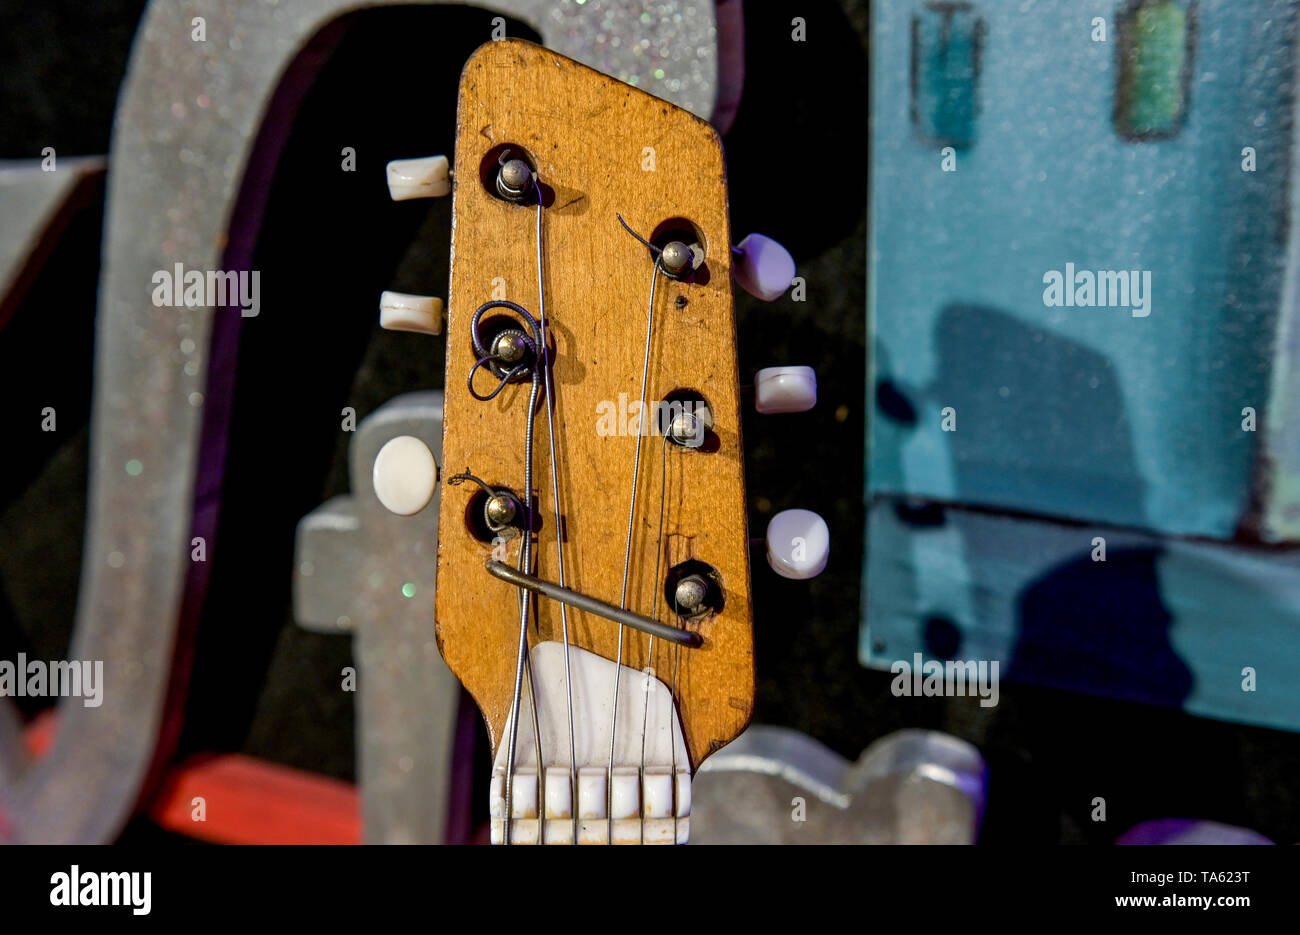 Hambourg, Allemagne. 22 mai, 2019. George Harrison's 'Futurama' guitare  (ici seulement la poupée de l'instrument) est exposée sur une table dans le  'No1 Guitar Center' avant sa vente aux enchères à Londres.